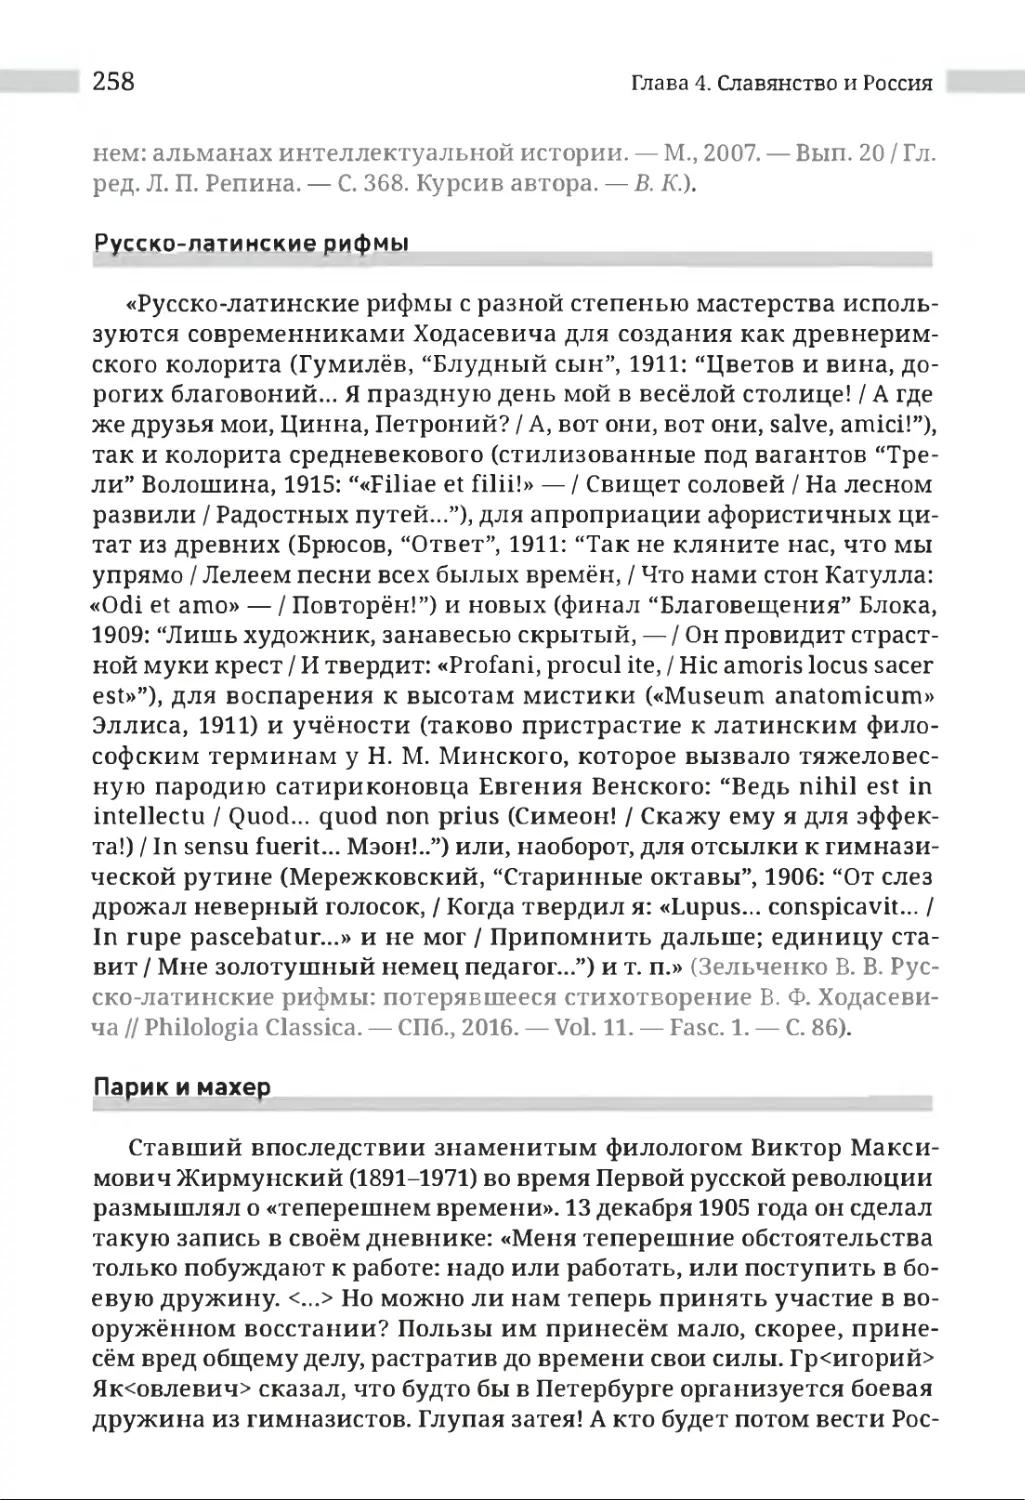 Русско-латинские рифмы
Парик и махер